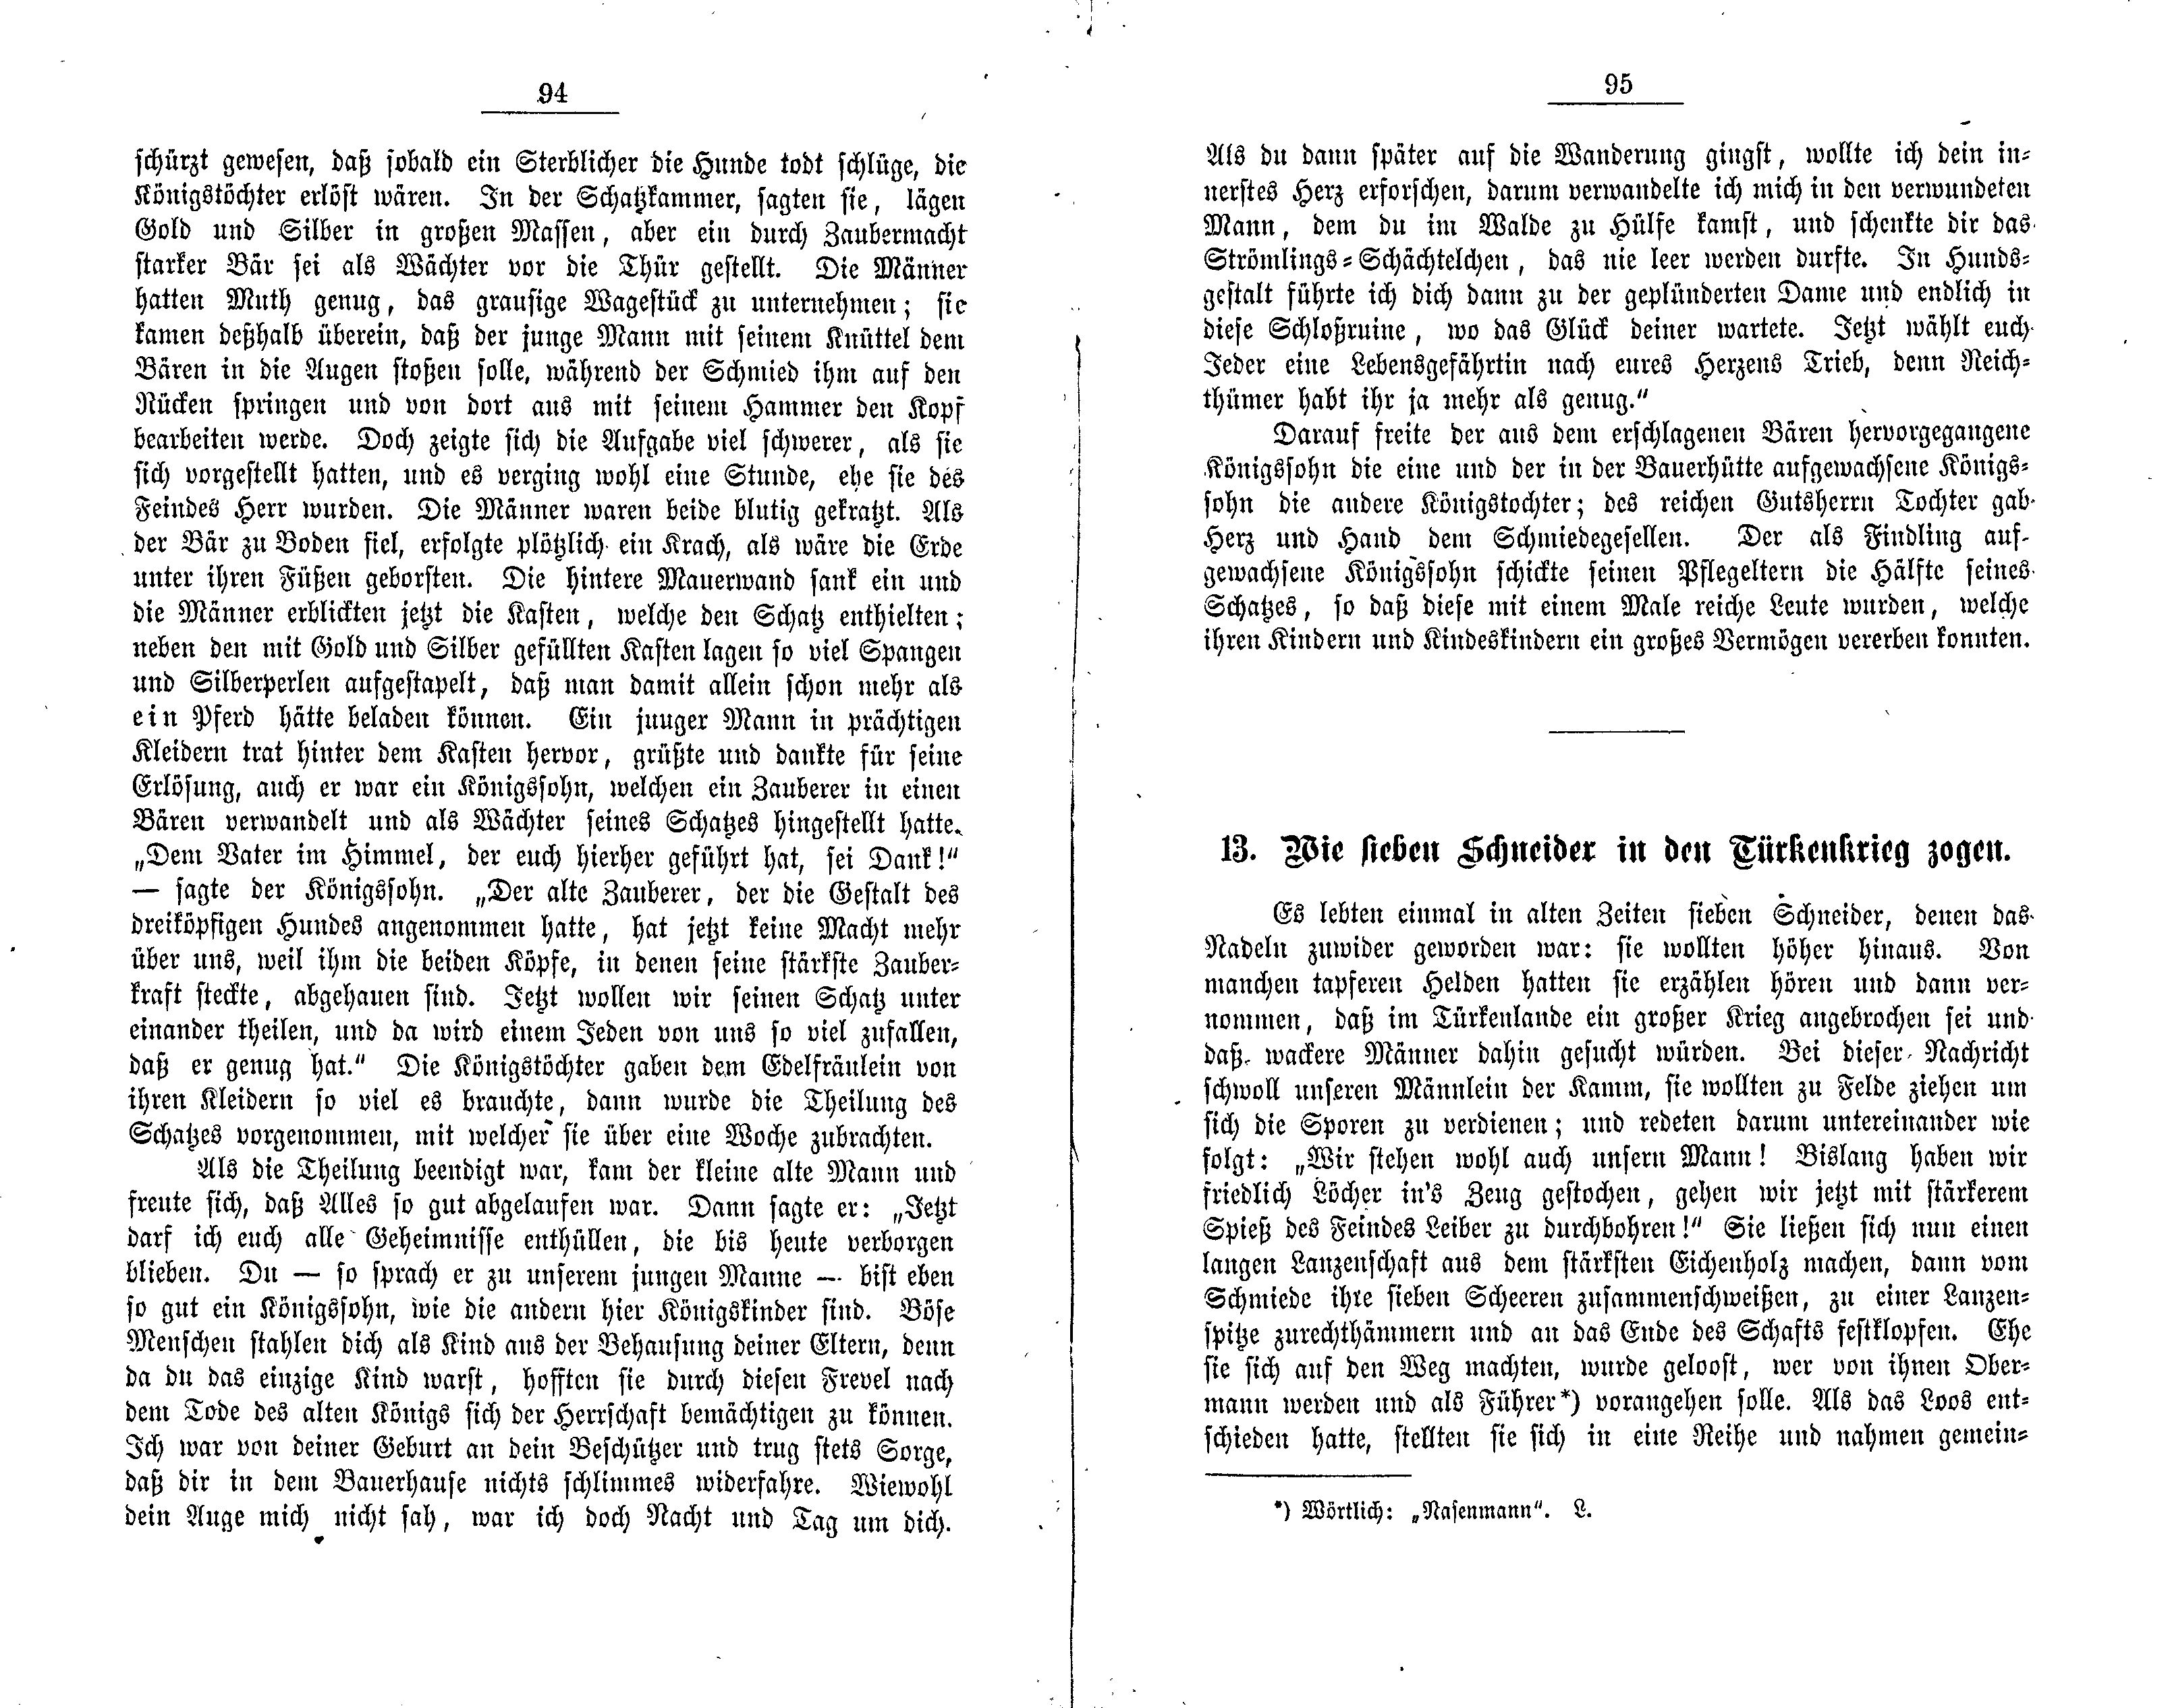 Wie sieben Schneider in den Türkenkrieg zogen (1881) | 1. (94-95) Основной текст